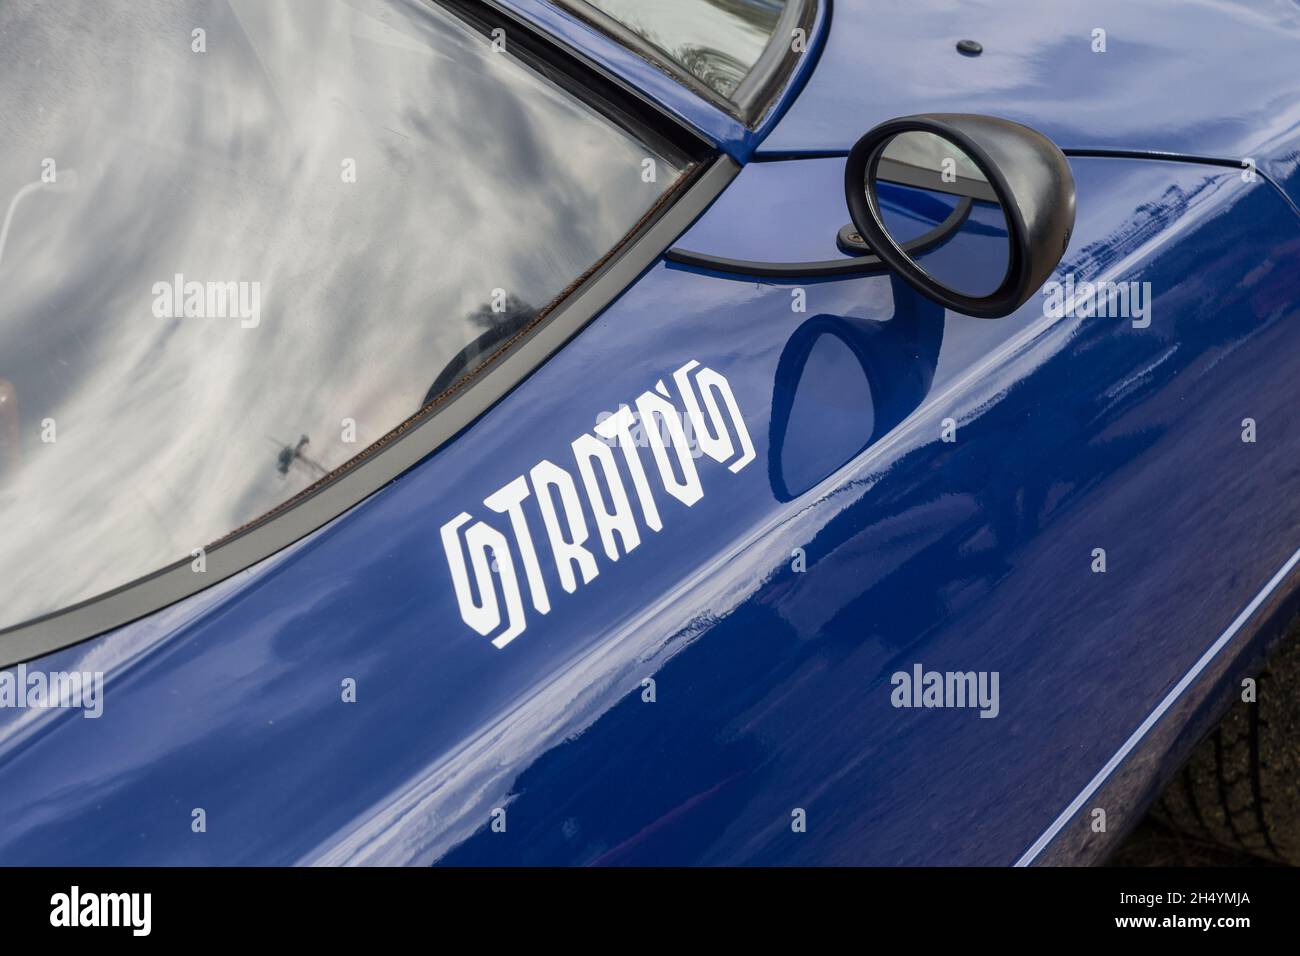 Nahaufnahme des Logonamens an der Tür eines blauen Lancia Stratos HF Stradale klassischen italienischen Sport-Rallye-Autos. Stockfoto